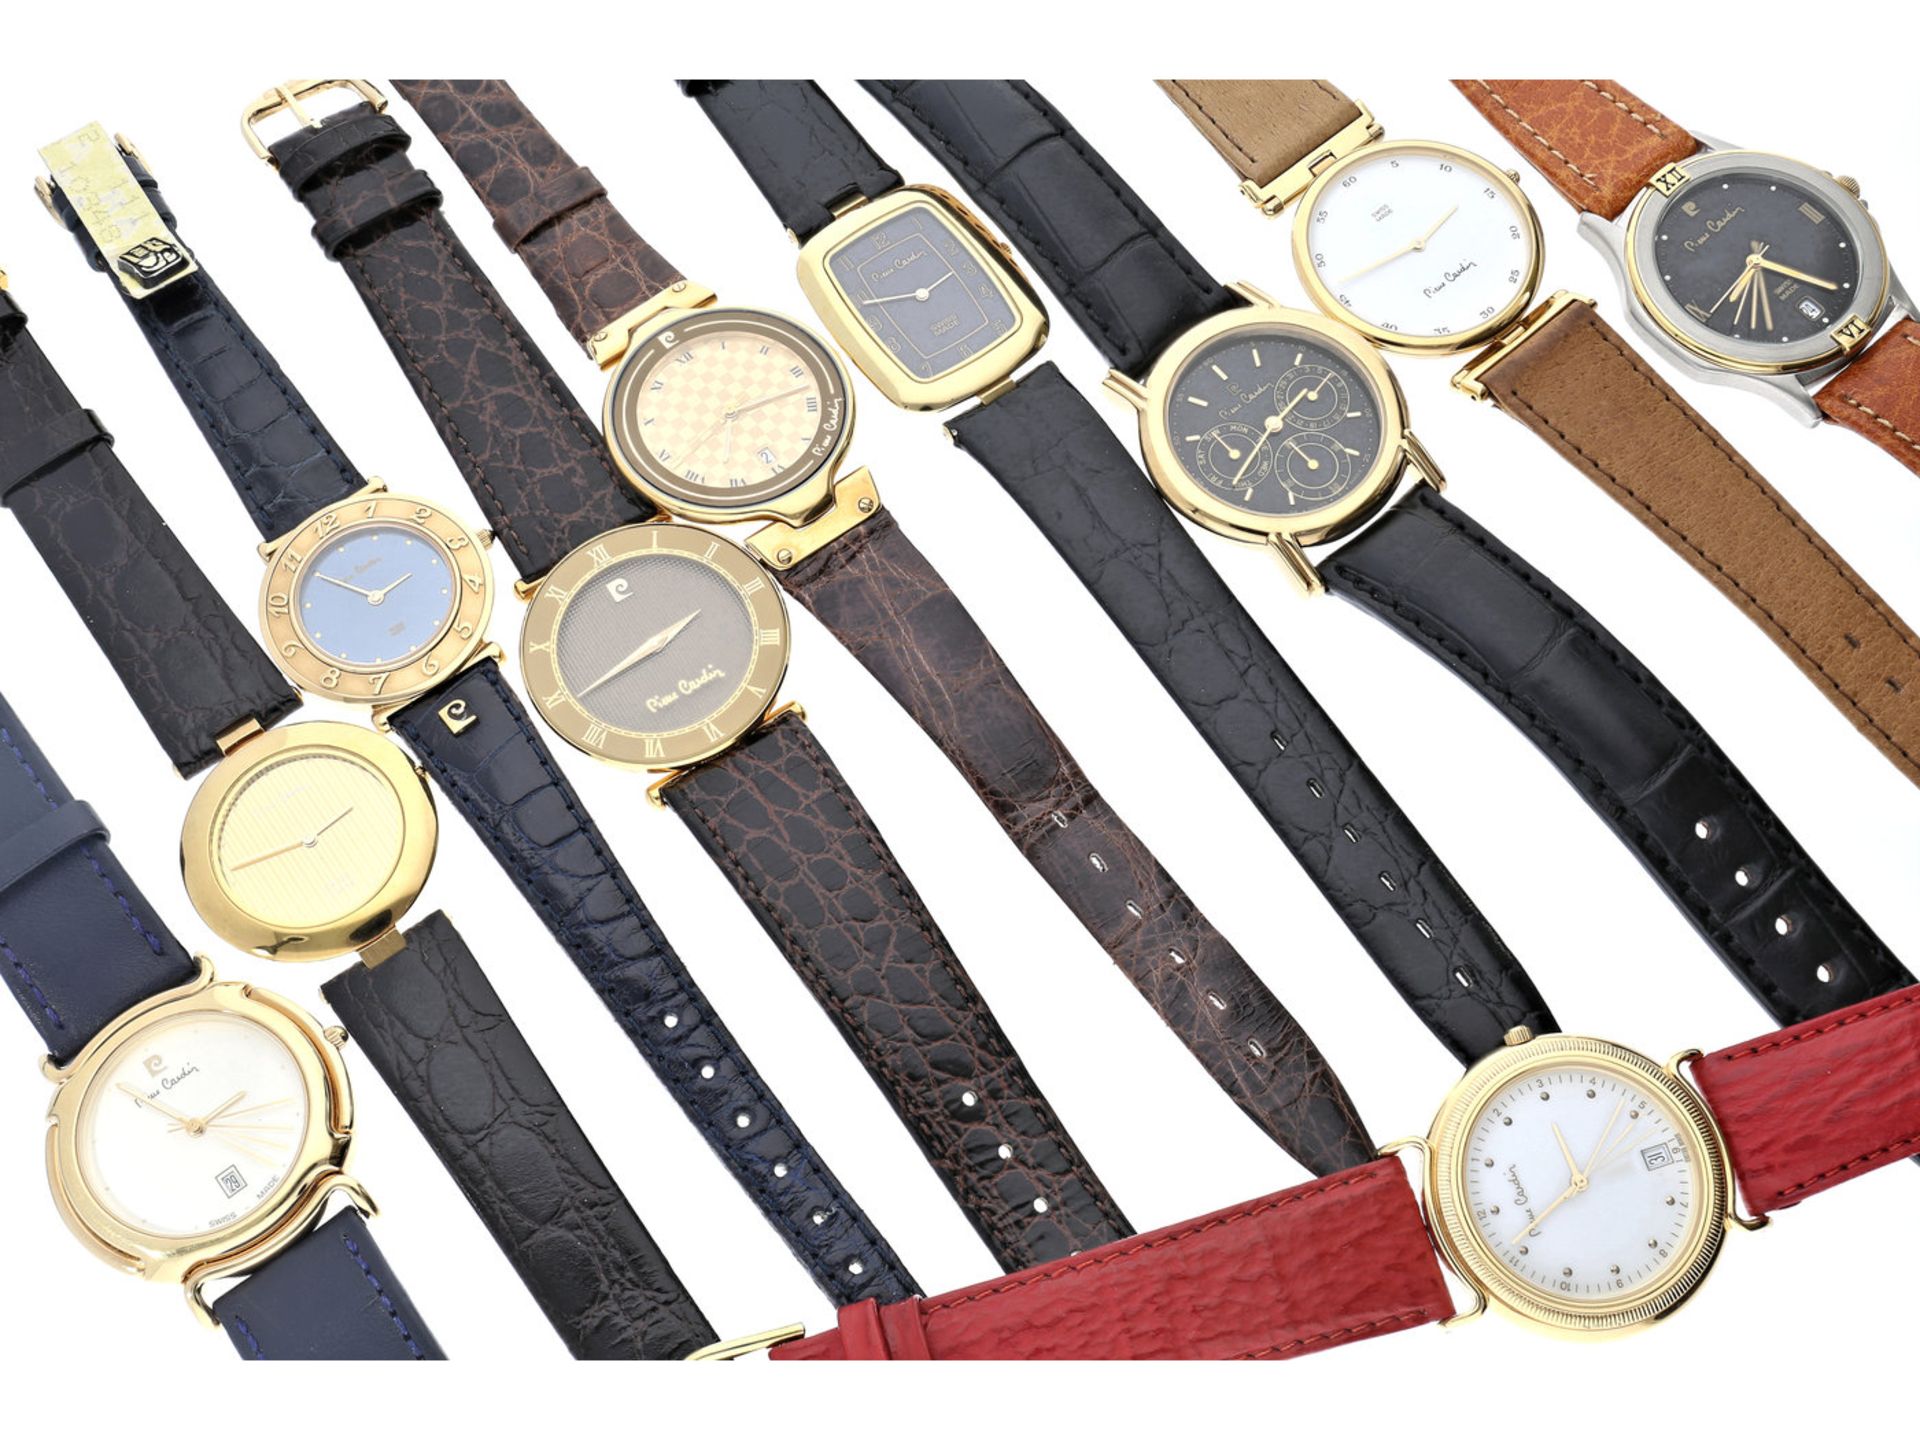 Armbanduhren: großes Konvolut von 10 Designeruhren der Marke Pierre Cardin, vintage